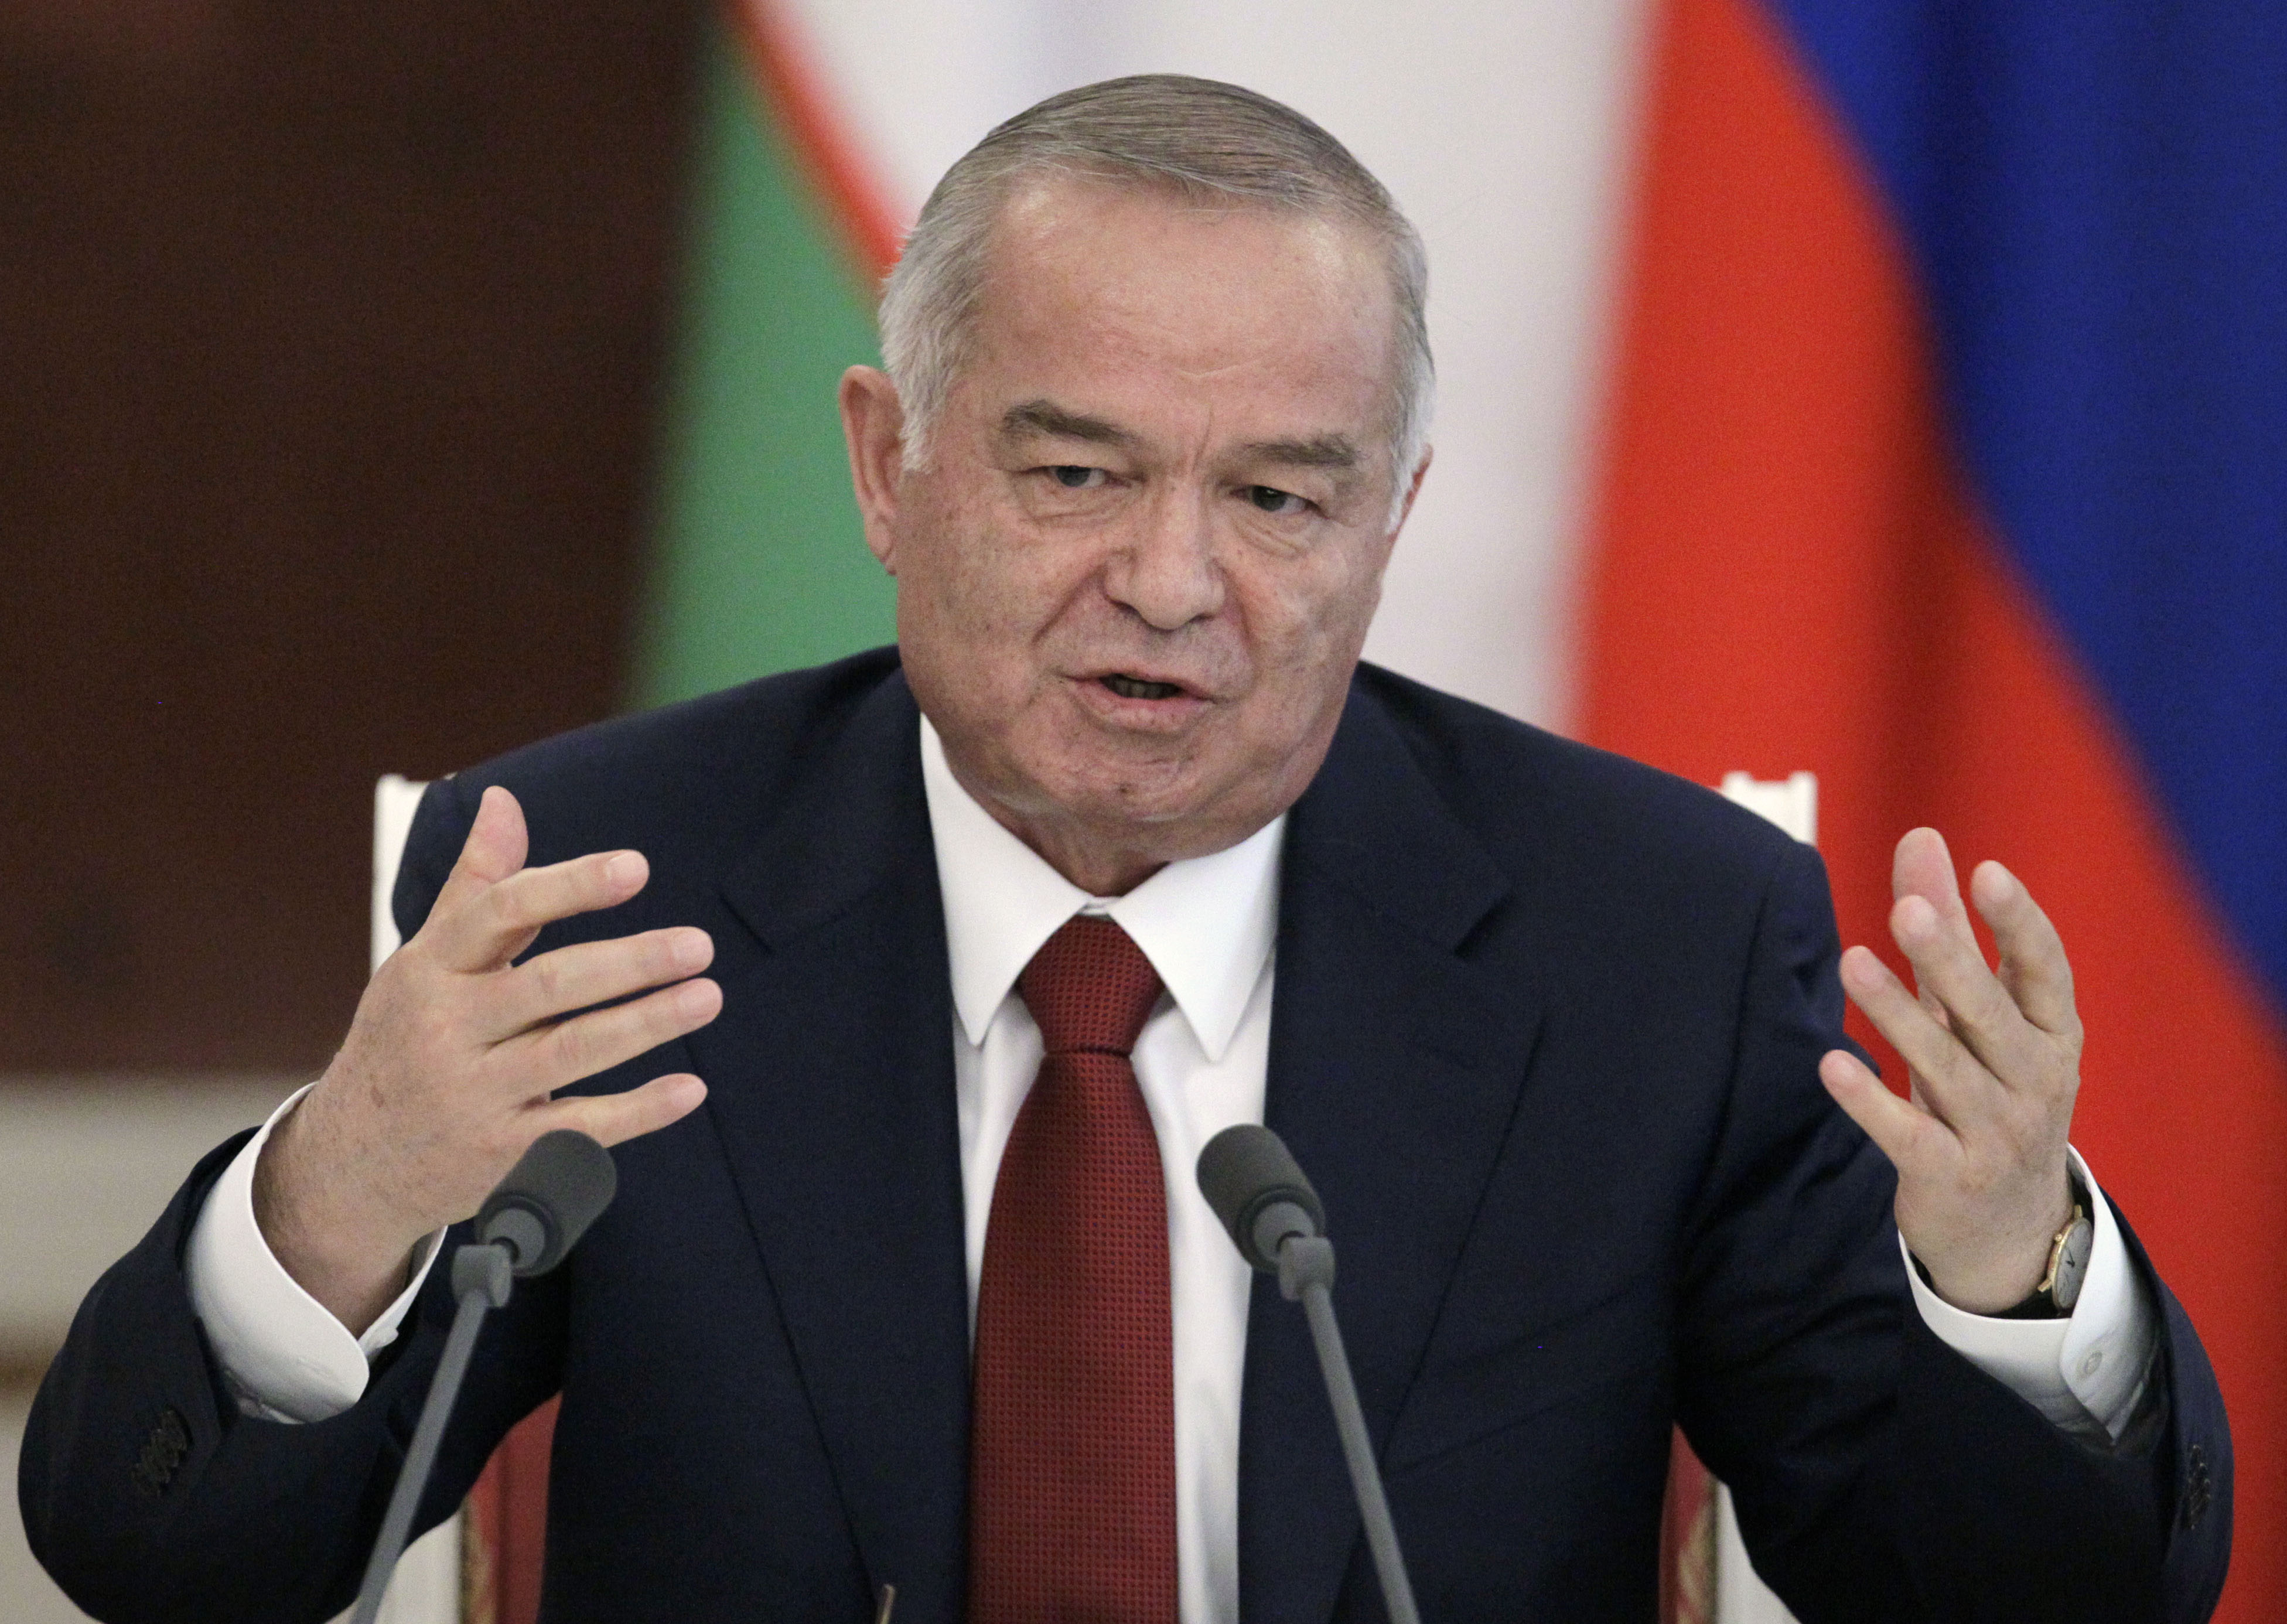 Islam Karimov - Uzbekistans president sedan 1990. Sedan dess har han hållit sig kvar vid makten genom politiska knep - han har sedan dess förlängt sin egen mandatperiod som president, något som strider mot landets författning. Internationellt har Karimov 